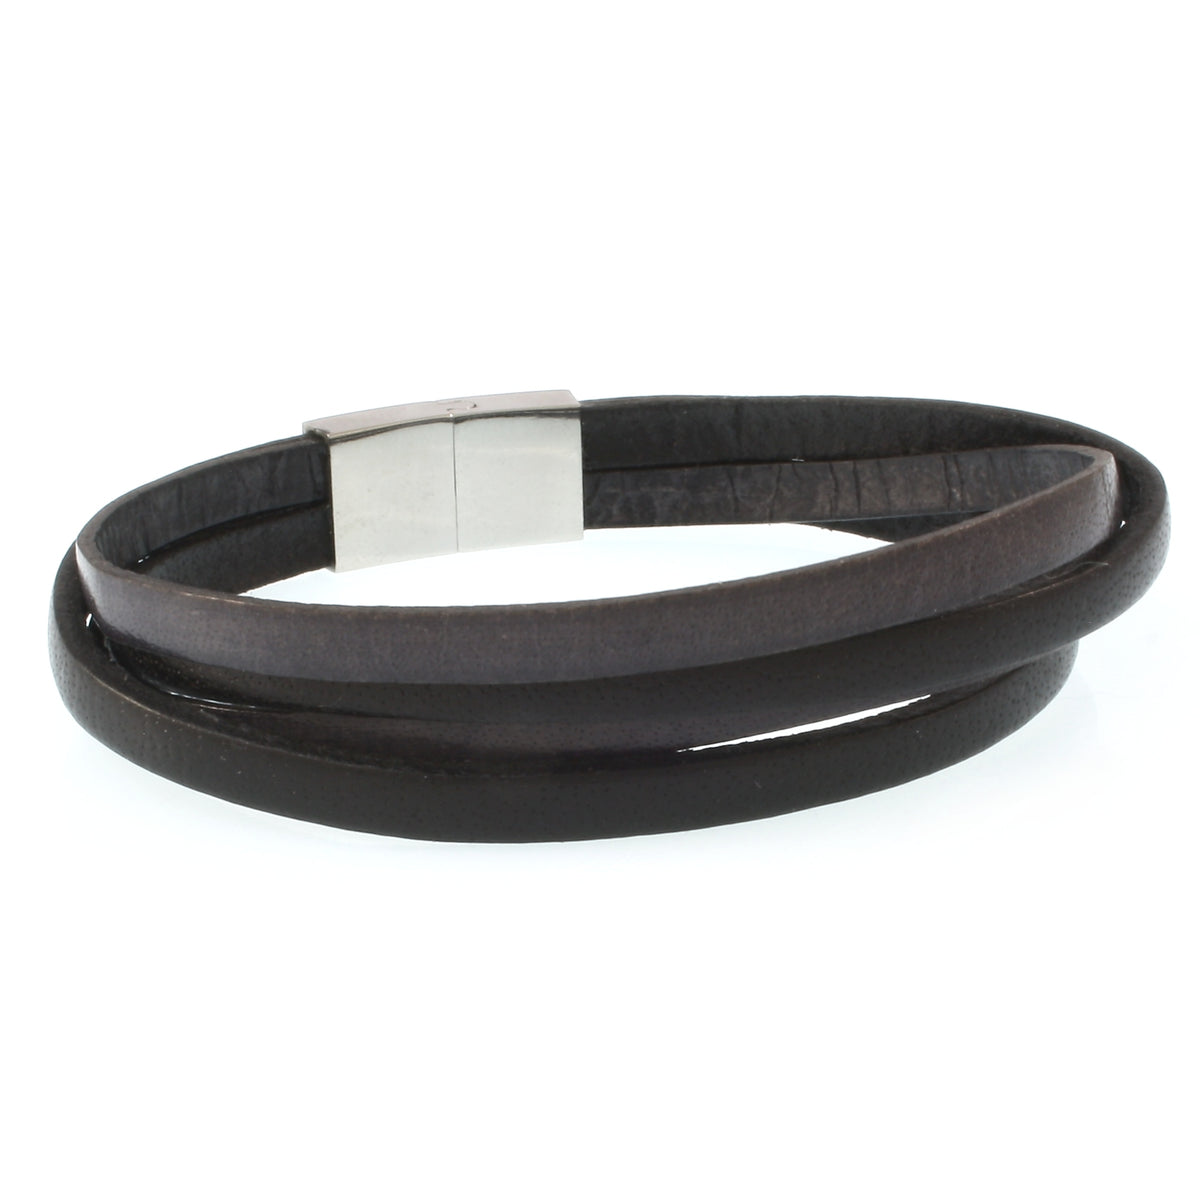 Herren-Leder-Armband-Twist-schwarz-grau-flach-Edelstahlverschluss-hinten-wavepirate-shop